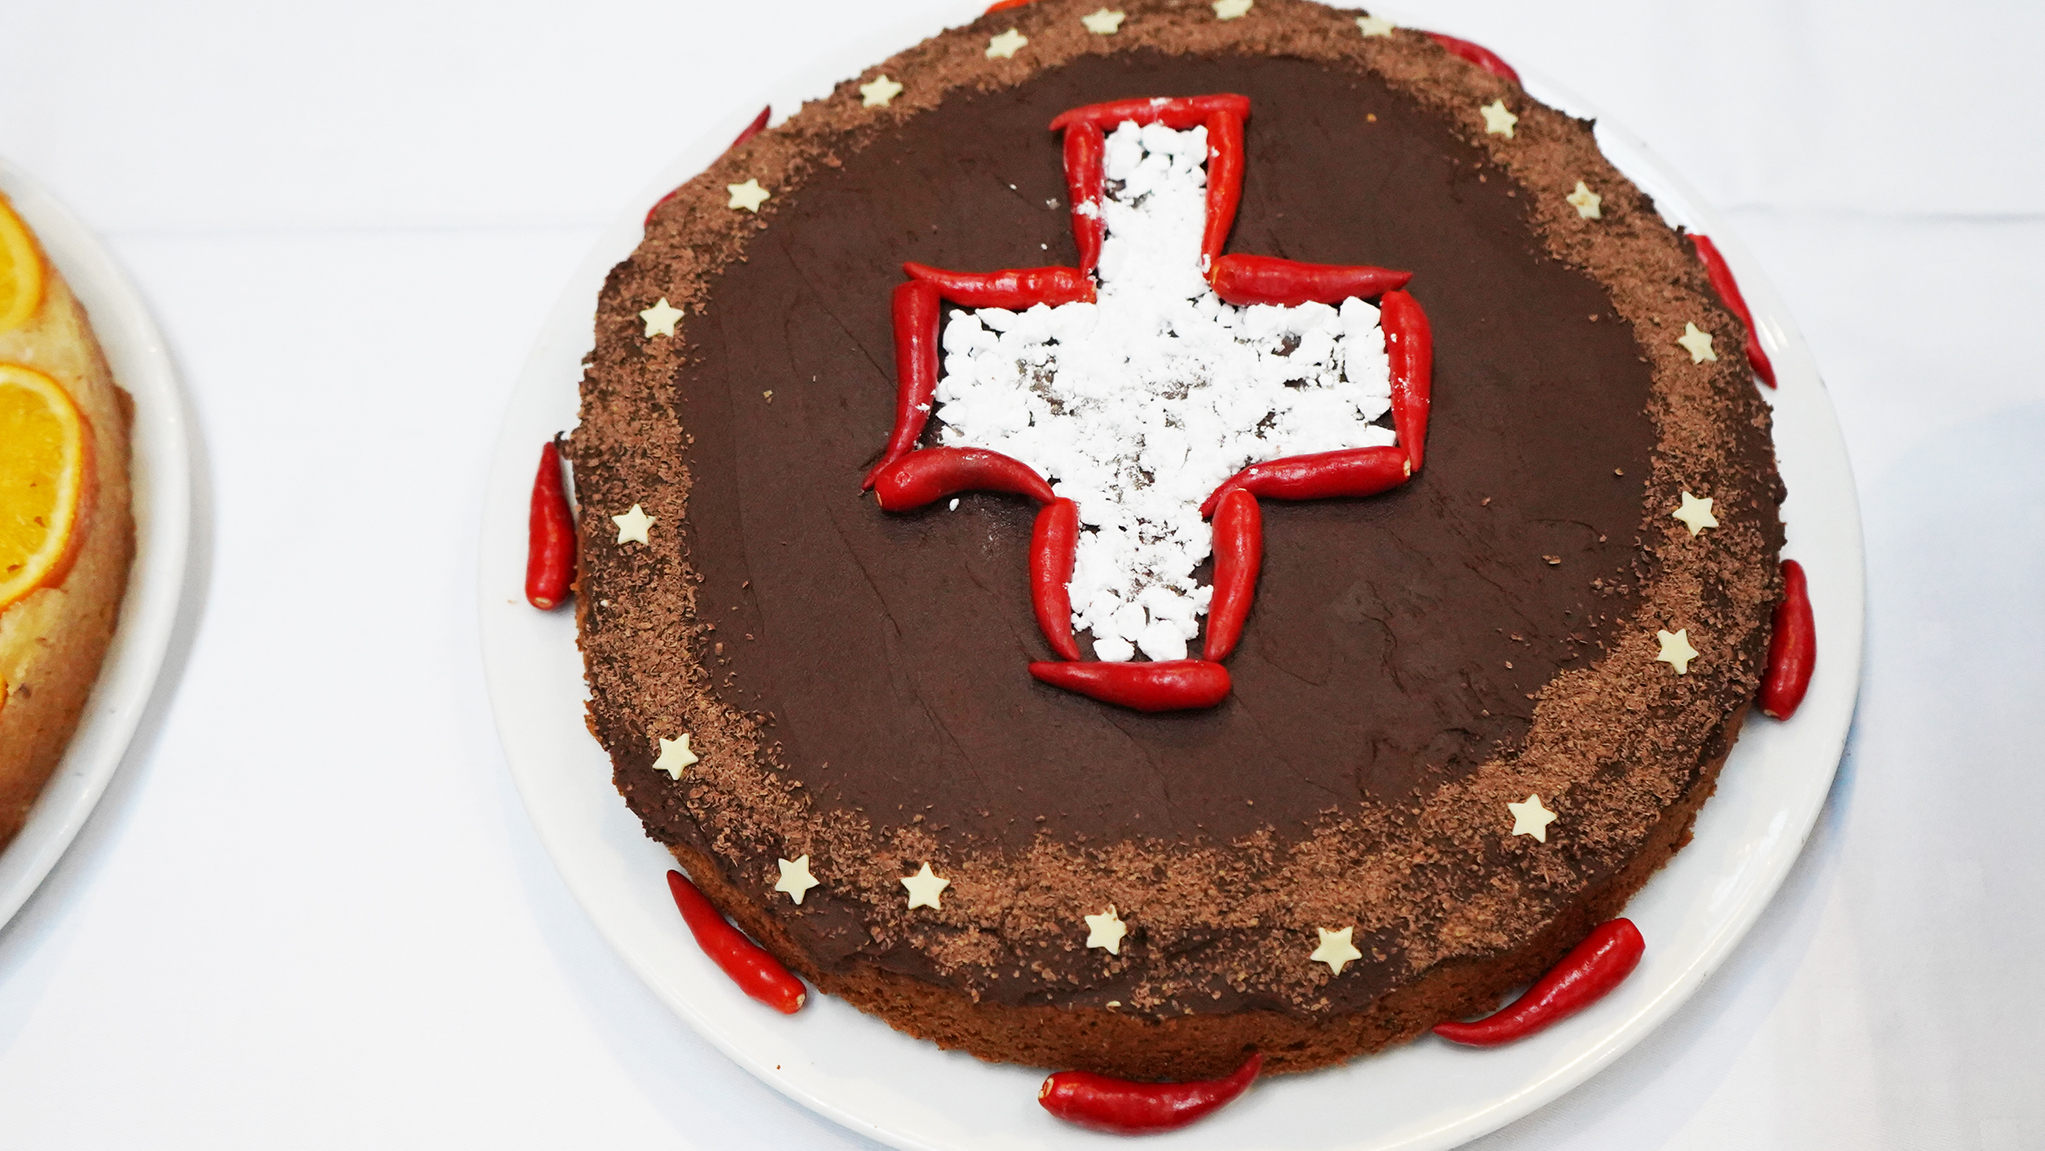 Süss und scharf: Mit diesem Kuchen im Schweiz-Design wagte ein Belgisch-Thailändisches Backteam ein Fusion-Rezept mit Brüssler Schokolade und drei verschiedenen Chili-Sorten.